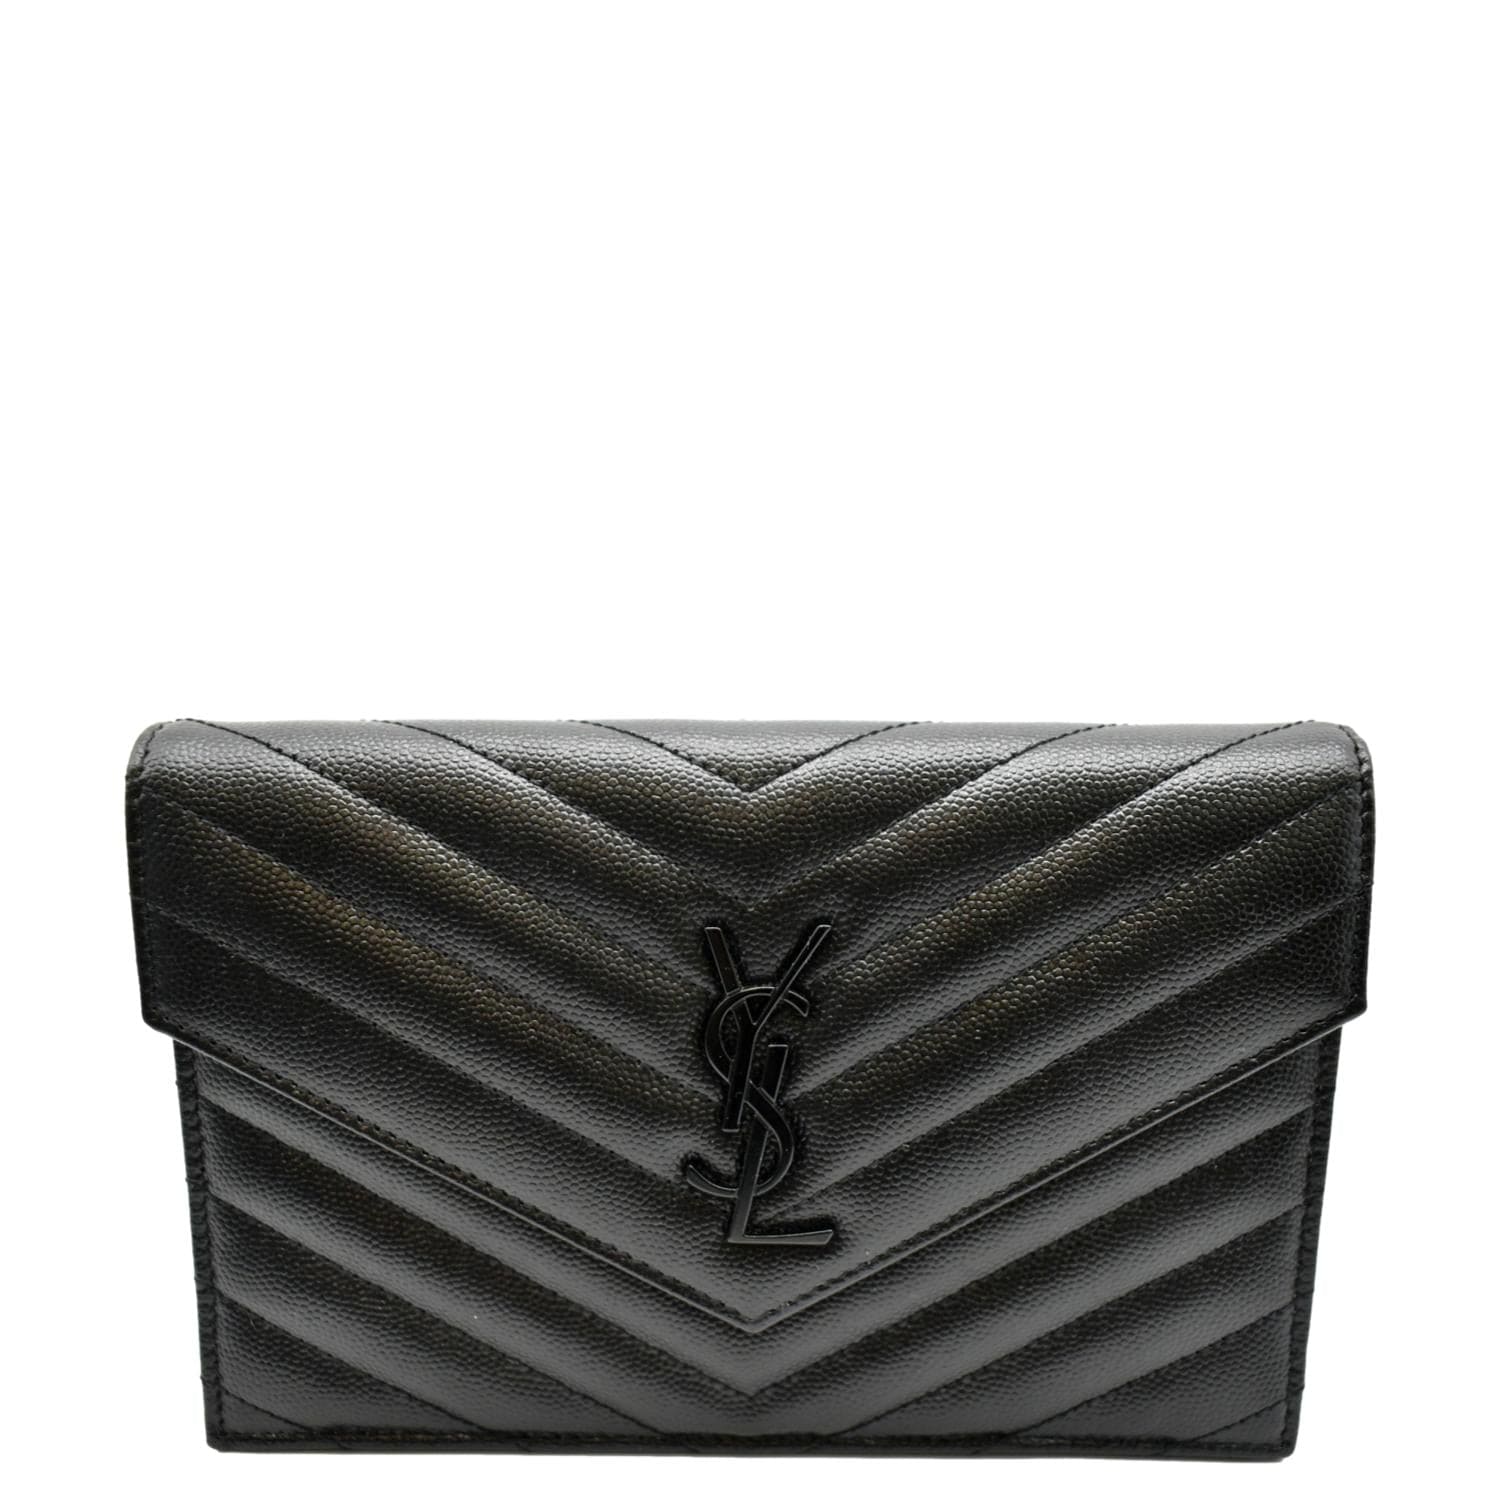 Yves Saint Laurent Cassandre Grain de Poudre Embossed Leather Chain Envelope Bag Black